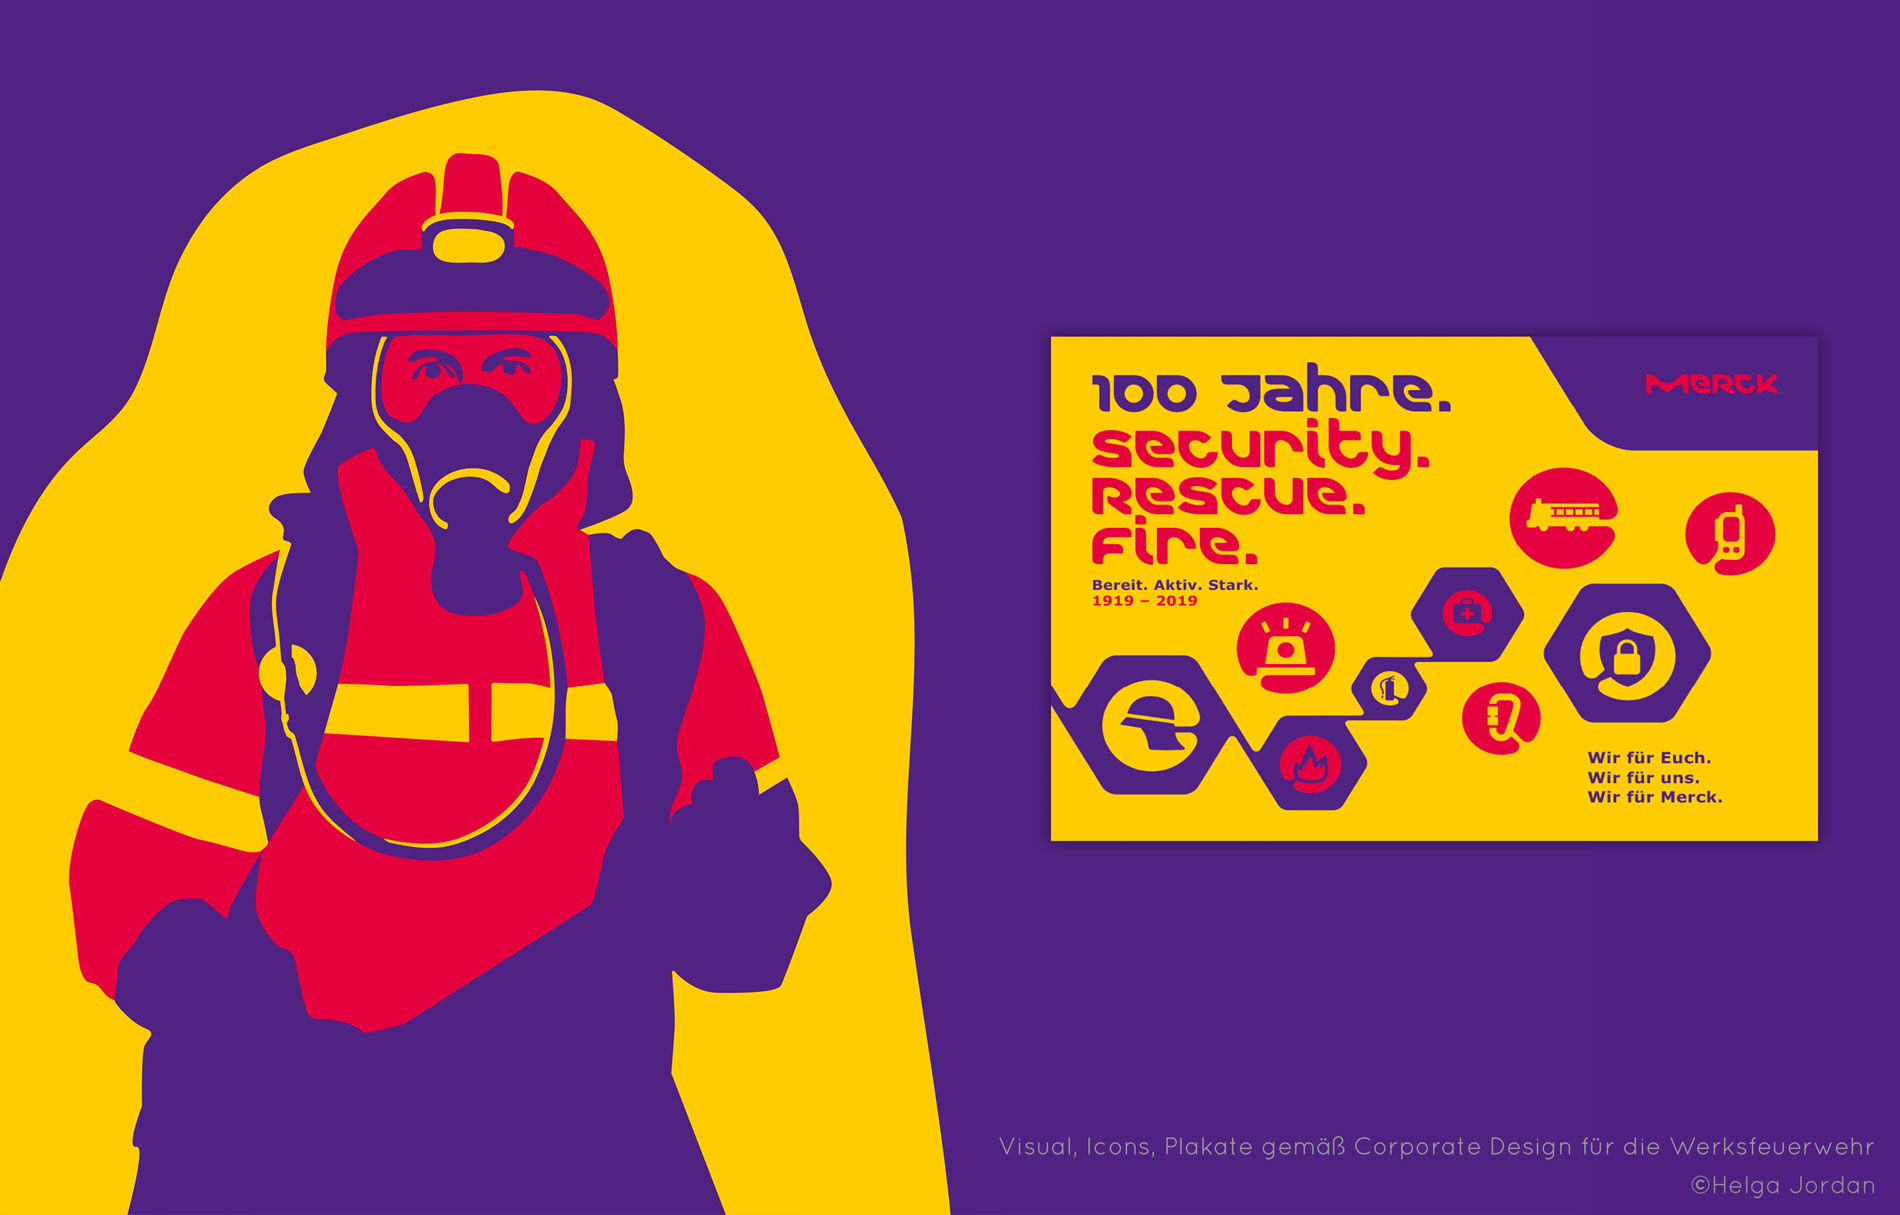 Feuerwehr-Jubiläum, Entwicklung des Keyvisual, Feuerwehr-Icons, Plakat, Anzeige